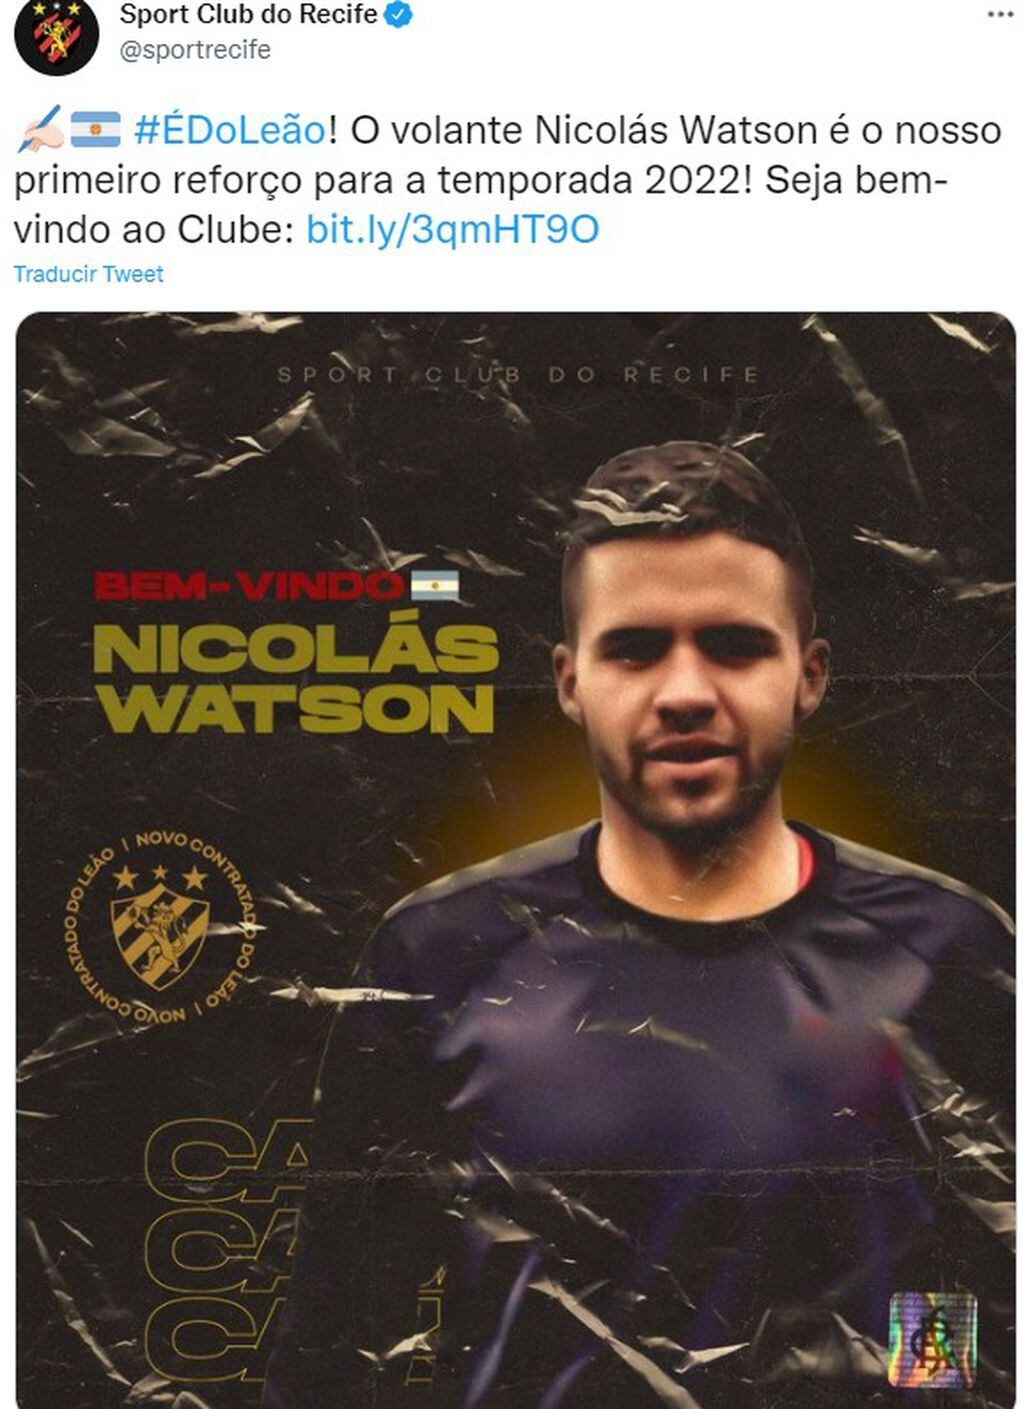 Nico Watson fue oficializado por el Recife.